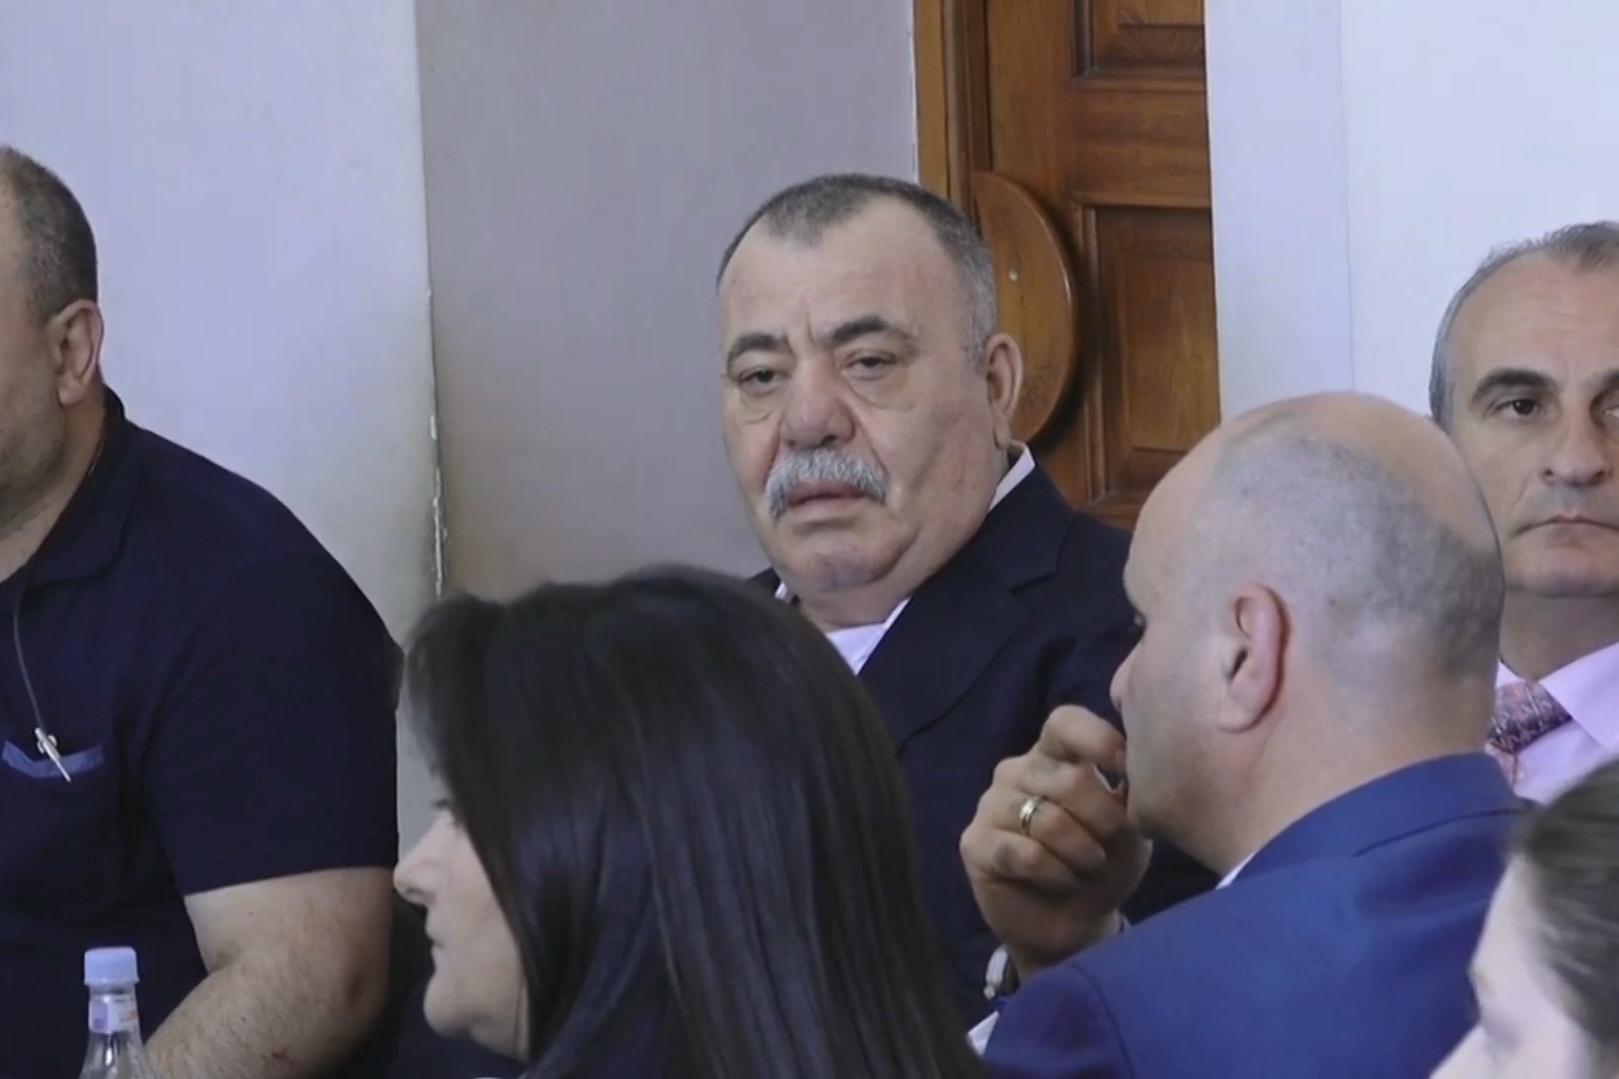 Մանվել Գրիգորյանի պաշտպանի խնդրանքով այսօրվա դատական նիստն ընթանում է դռնփակ 